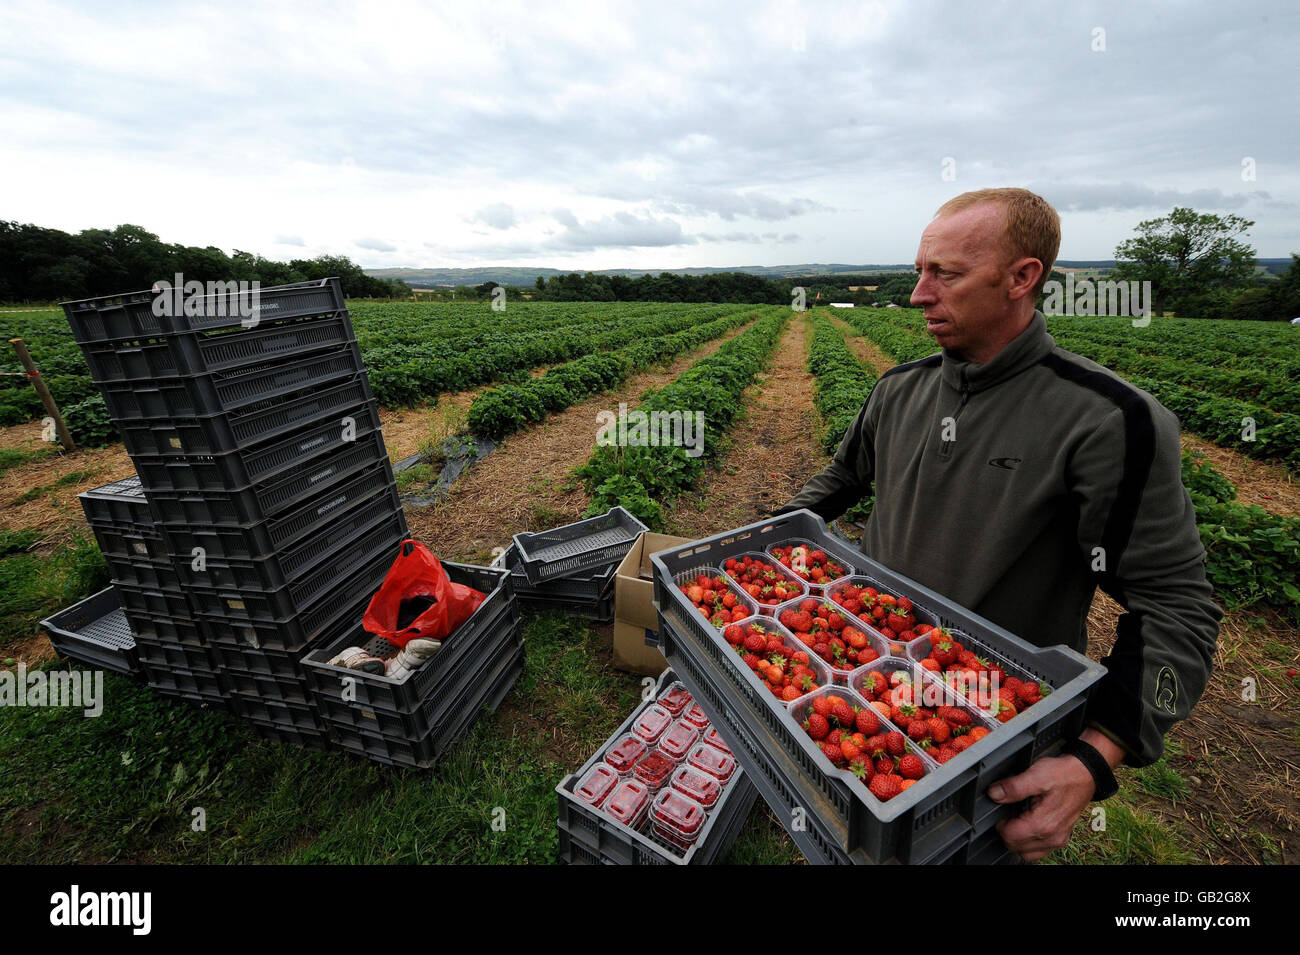 ERNEUT ÜBERTRAGEN KORREKTUR ZWEITEN SATZ Arbeiter auf dem Feld auf Brocksbushes Farm in Northumberland. Die Felder sind voll von Erdbeeren, die aufgrund des schlechten Wetters in Großbritannien in diesem Sommer nicht gepflückt wurden und die anfechten Obstpflücker von der Ernte abhalten. Stockfoto